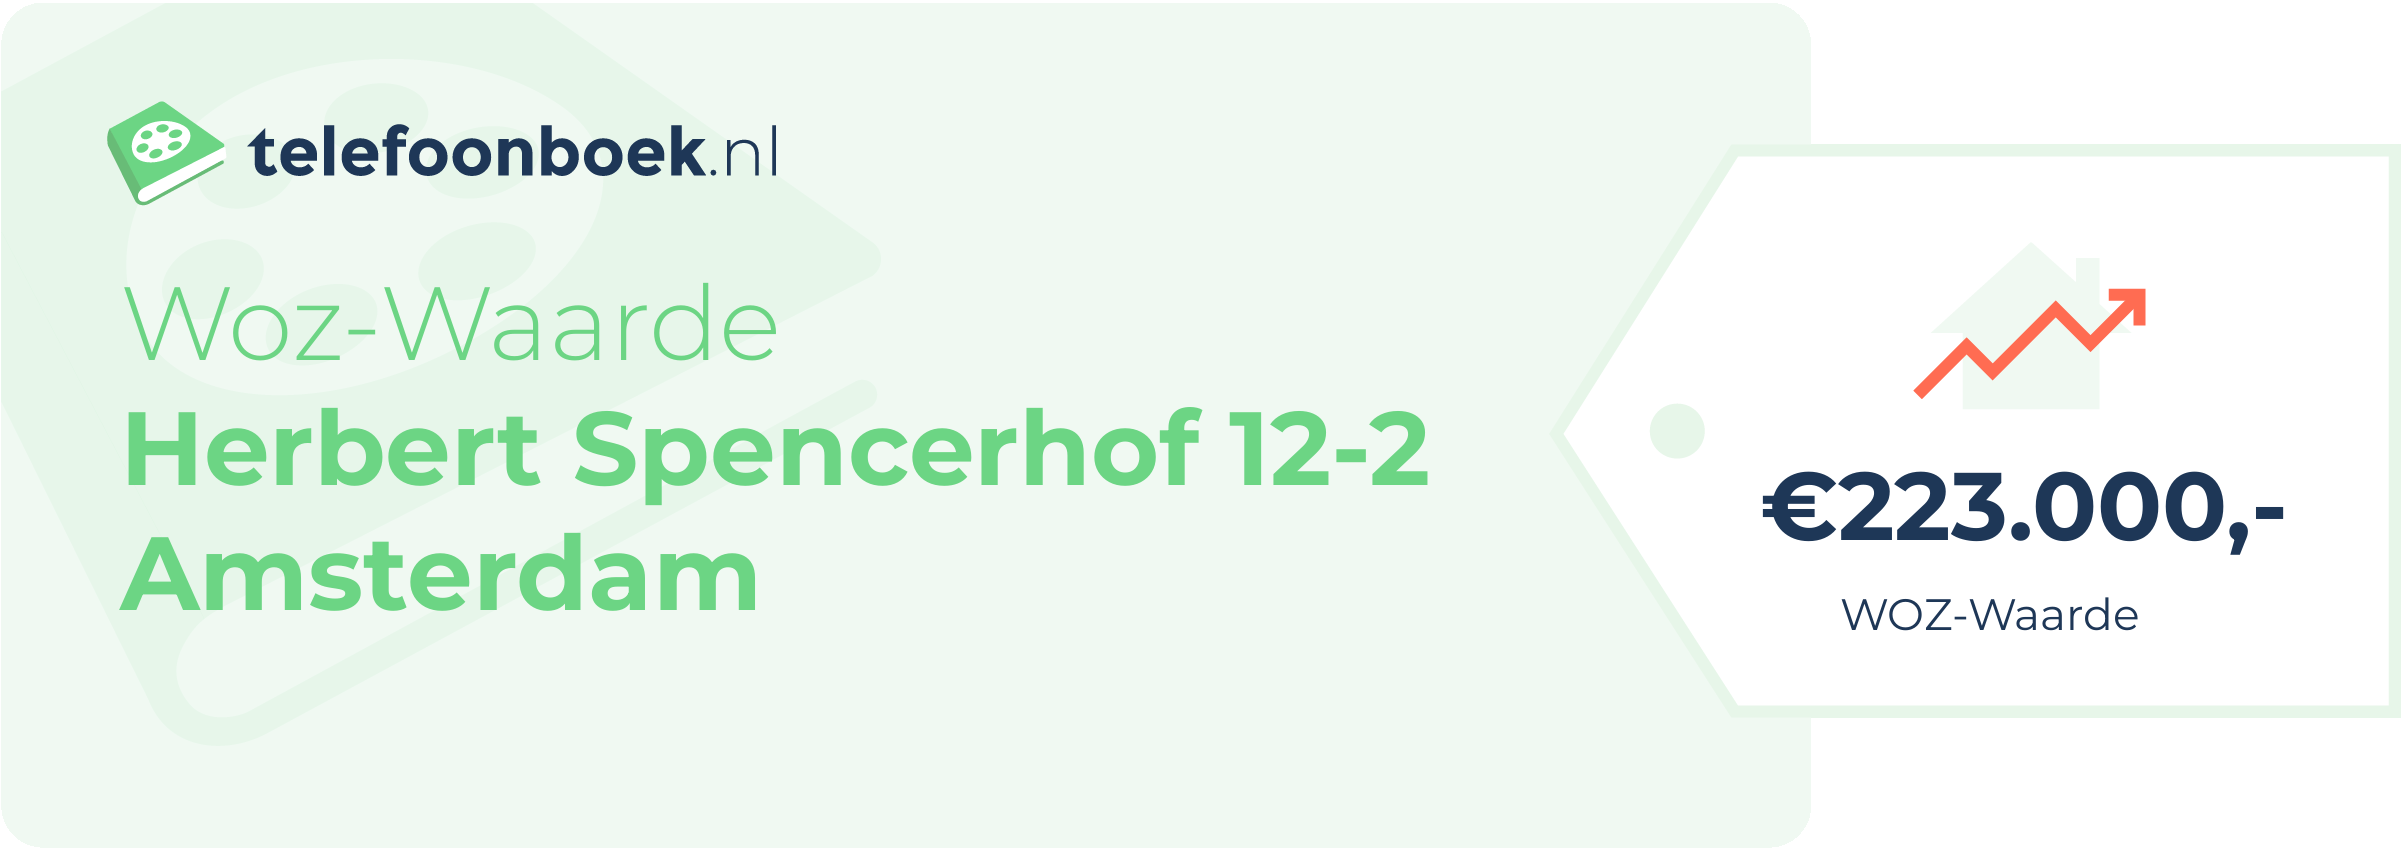 WOZ-waarde Herbert Spencerhof 12-2 Amsterdam